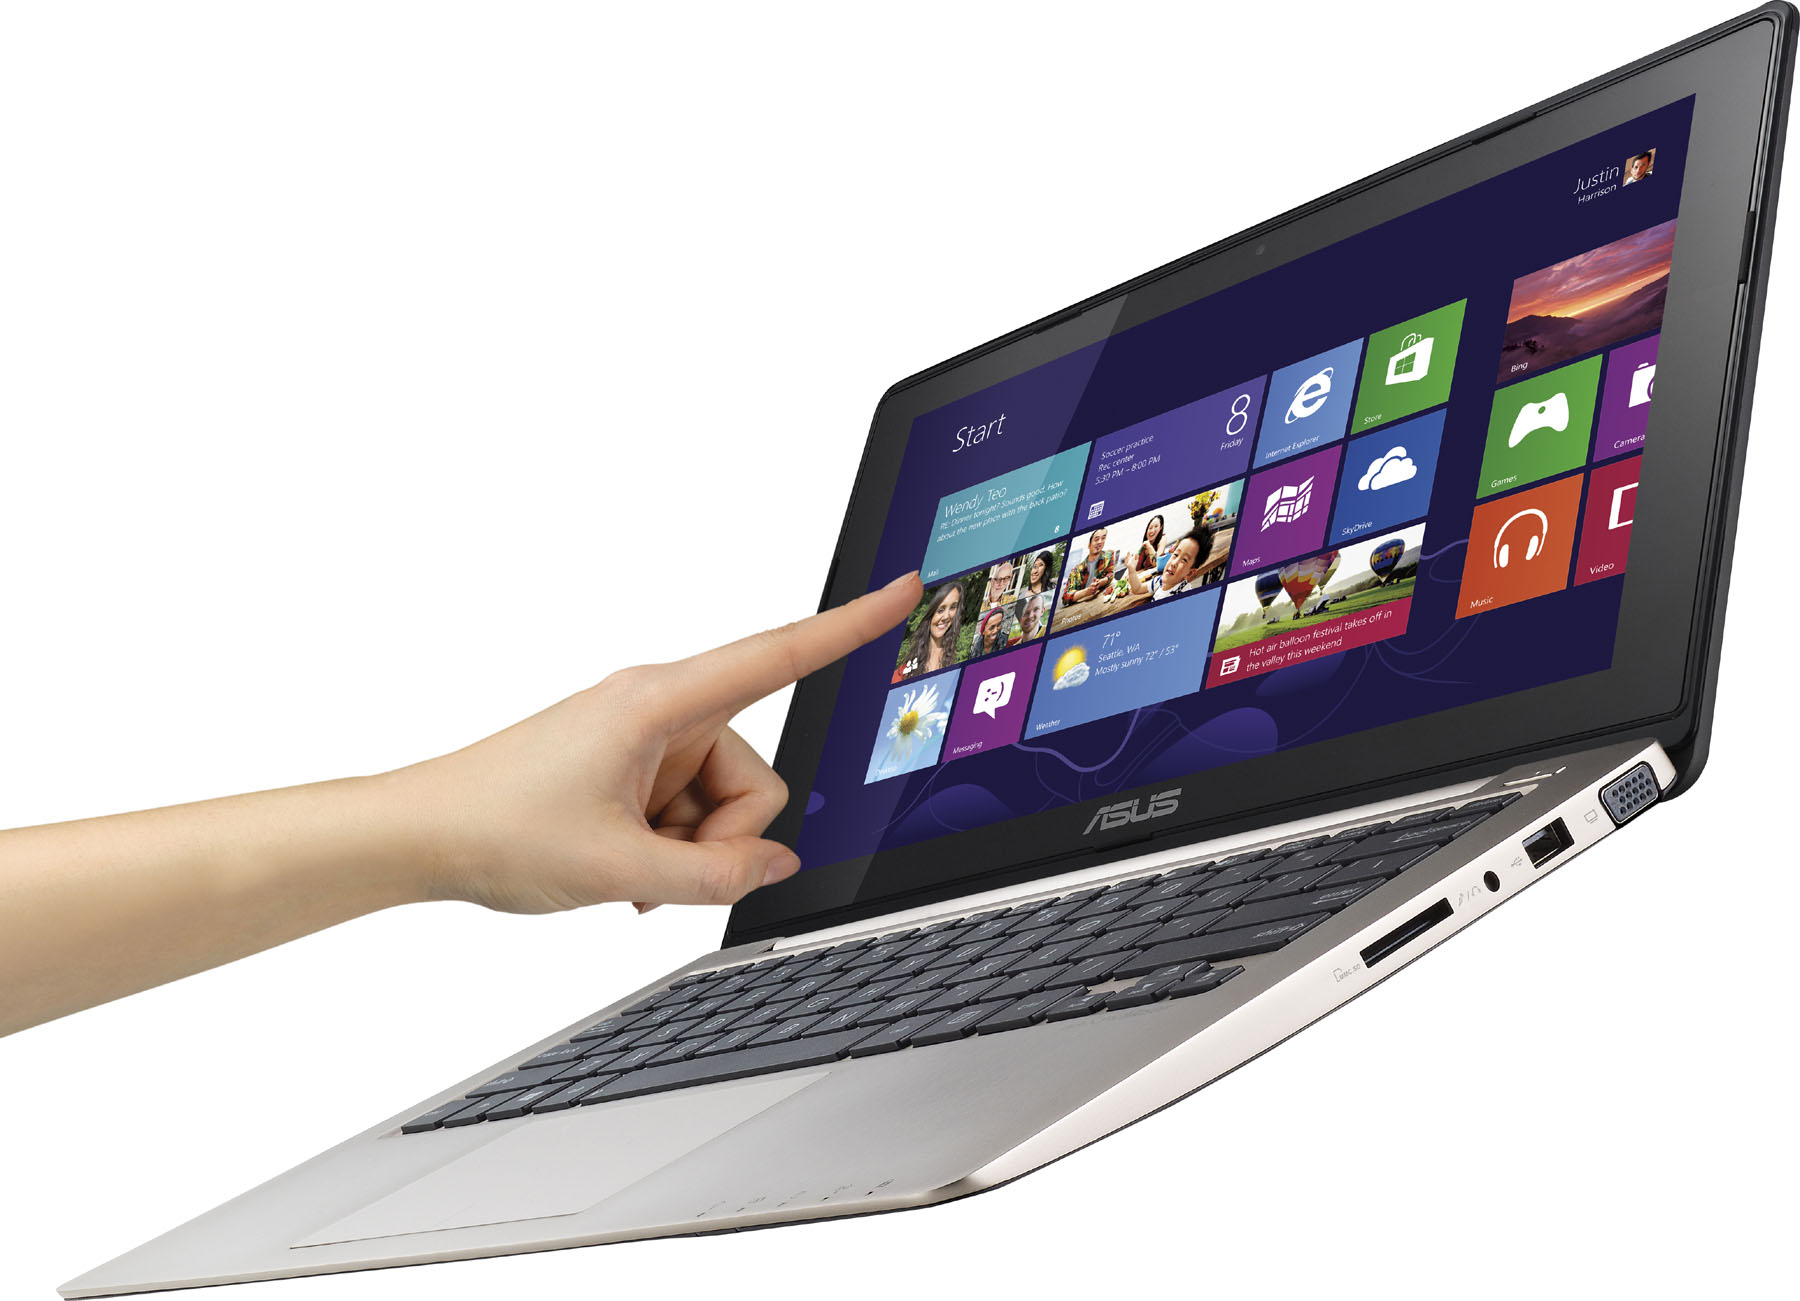 Laptop Asus VivoBook X200E-CT142H - Intel Core i3-3217U 1.8GHz, 4GB RAM, 500G HDD, Intel HD Graphics 4000, 11.6 inch, cảm ứng